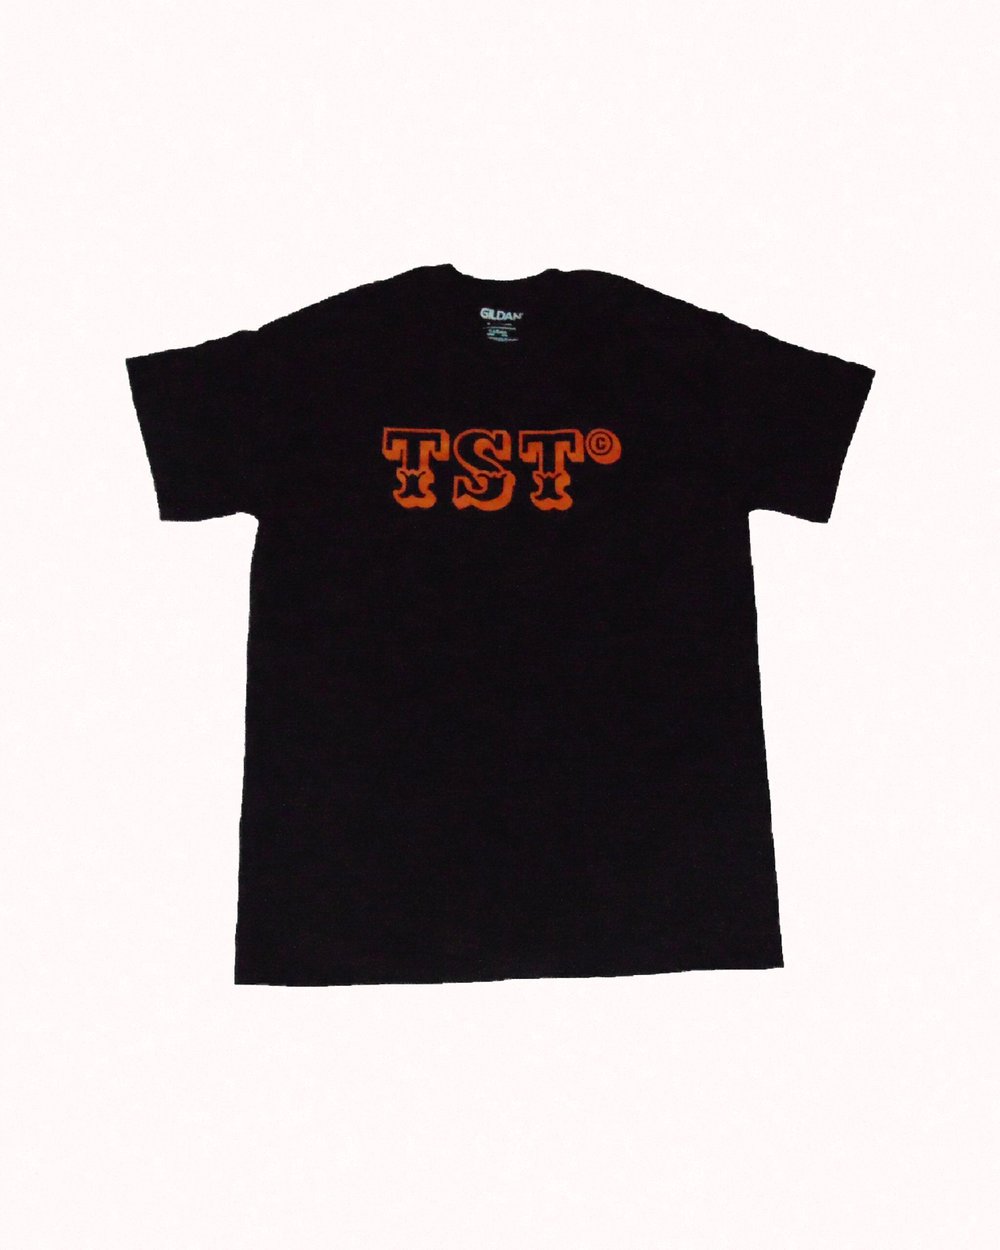 Image of TSTlogo t-shirt